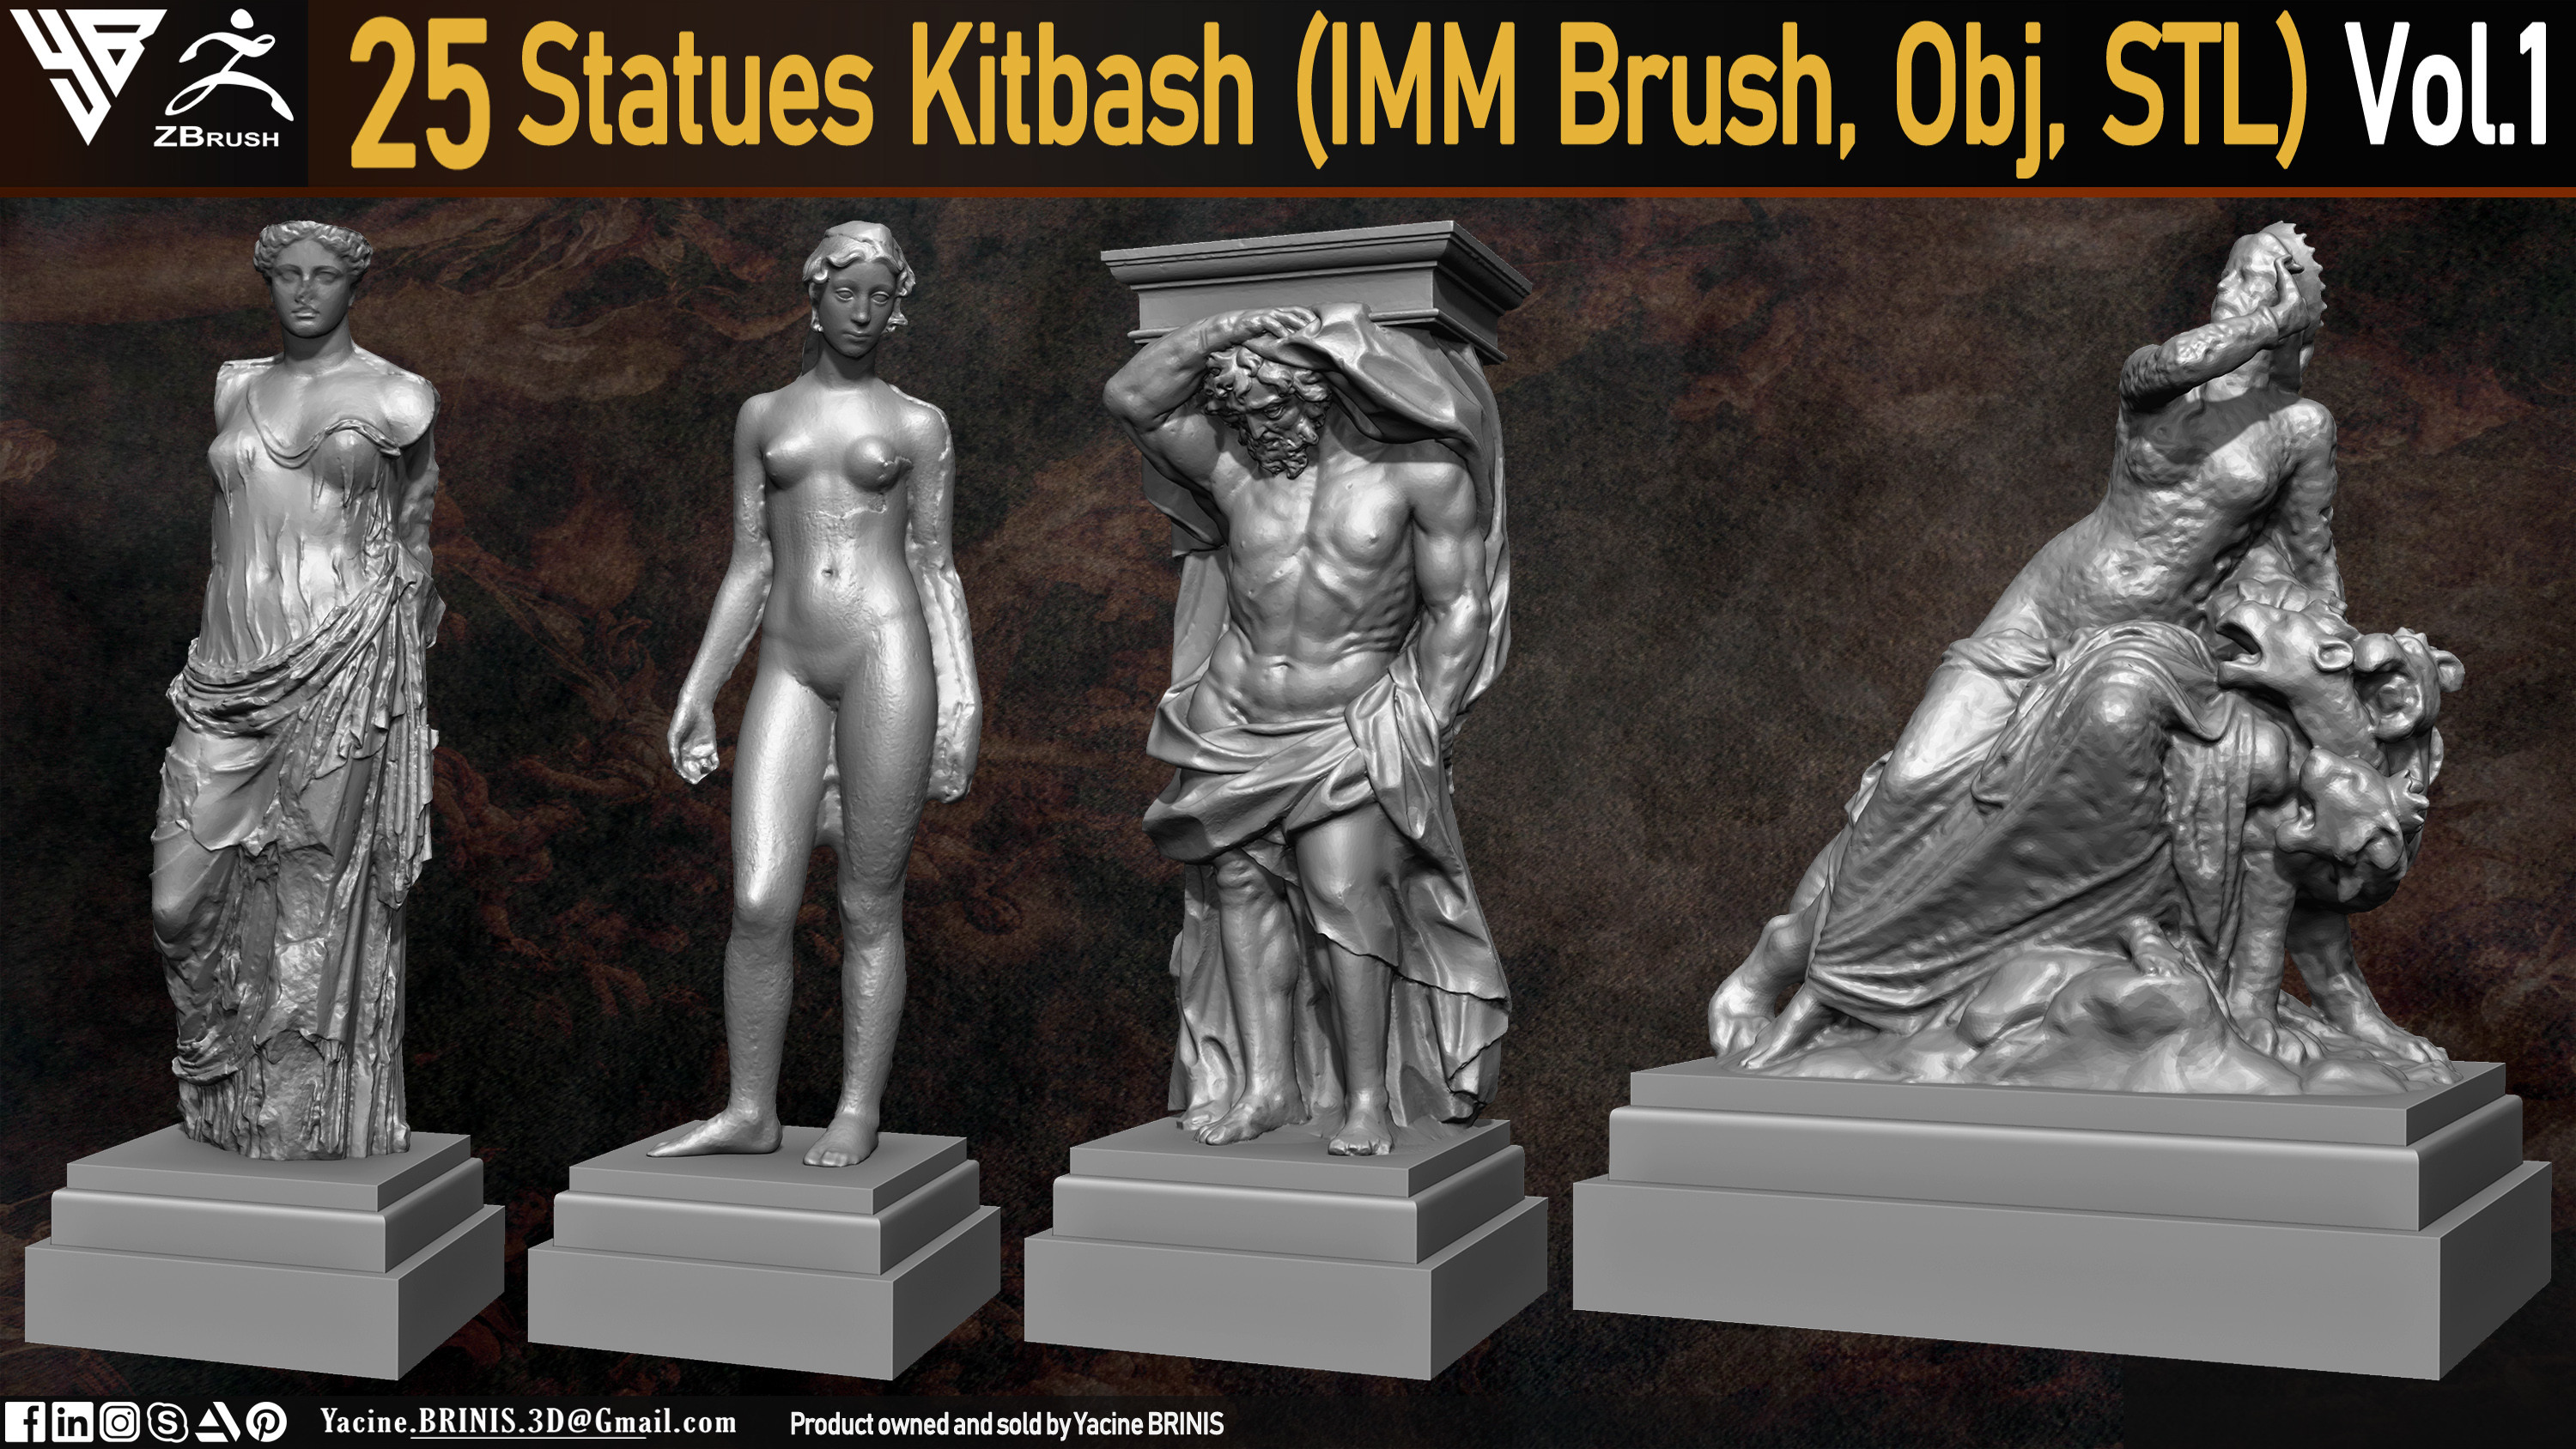 Statues Kitbash by yacine brinis Set 02